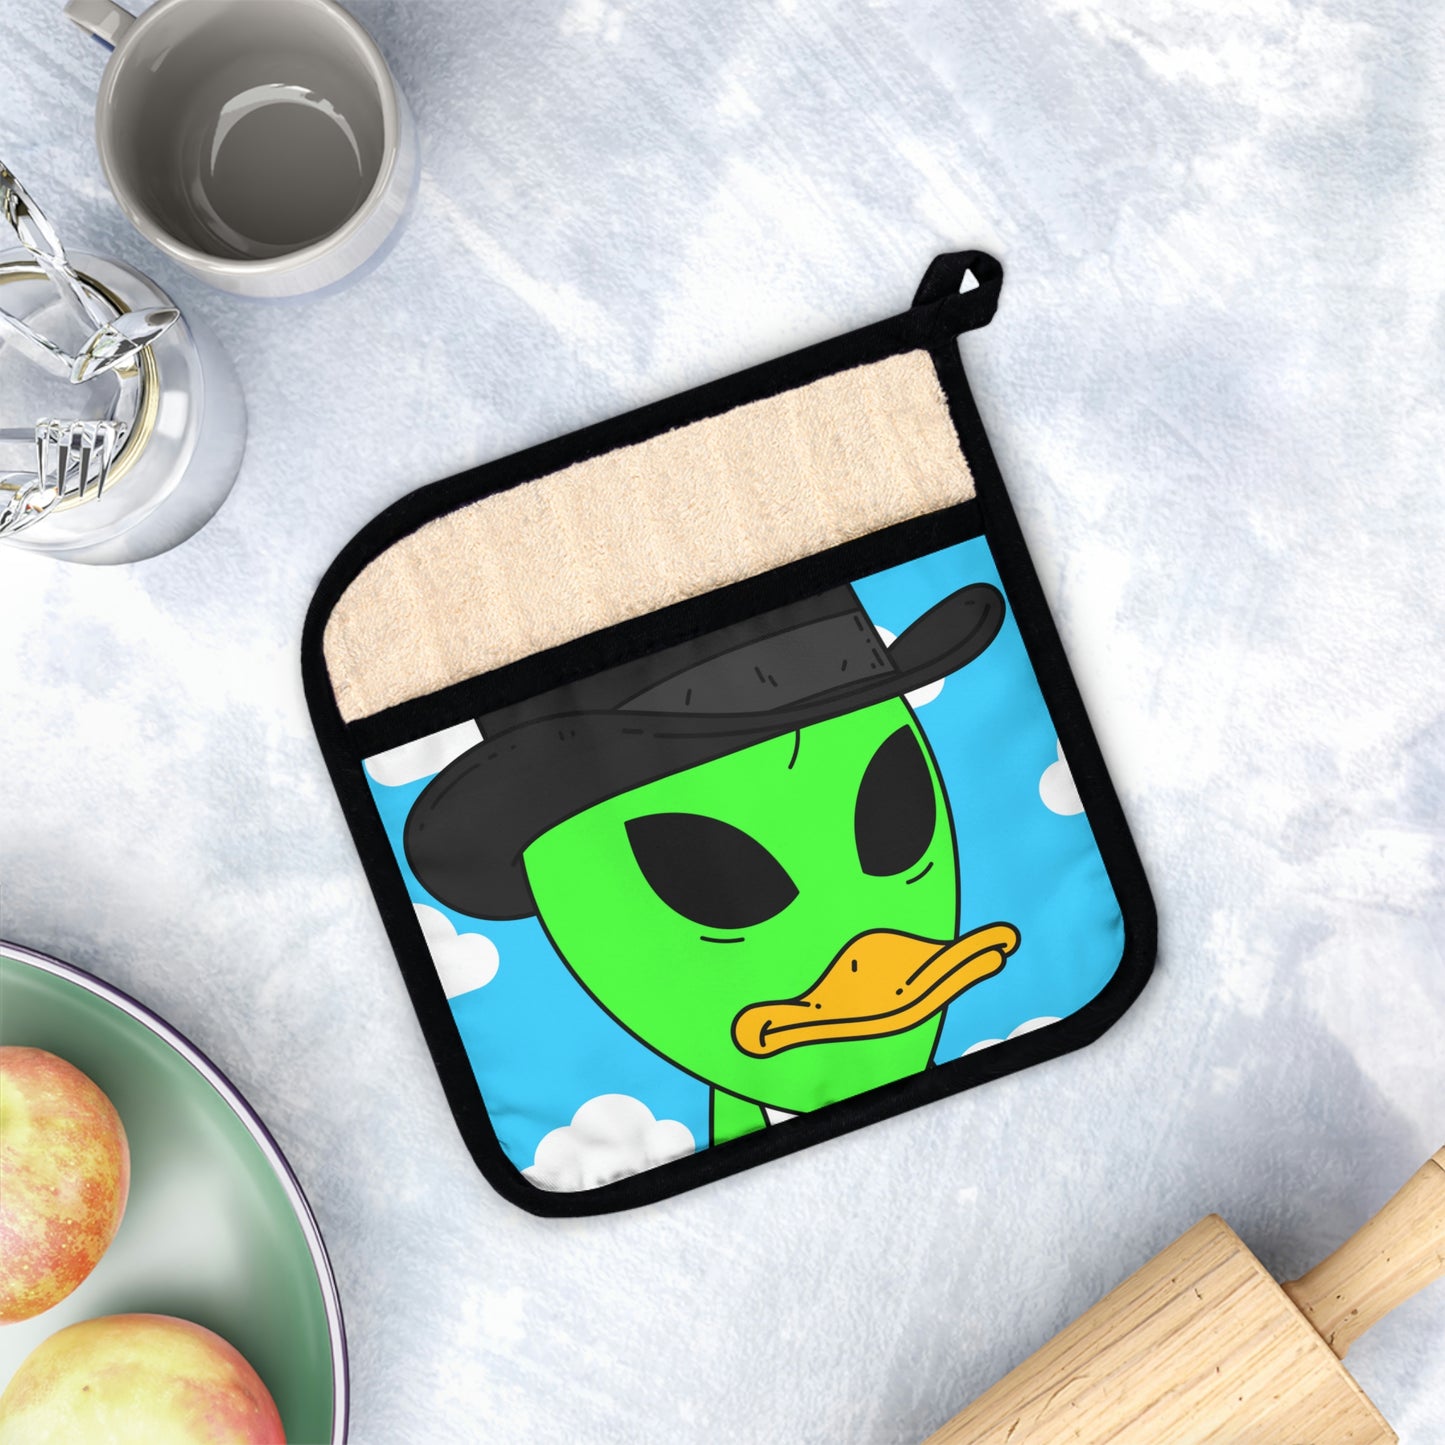 Visitor Green Alien Duck Black Top Hat Pot Holder with Pocket